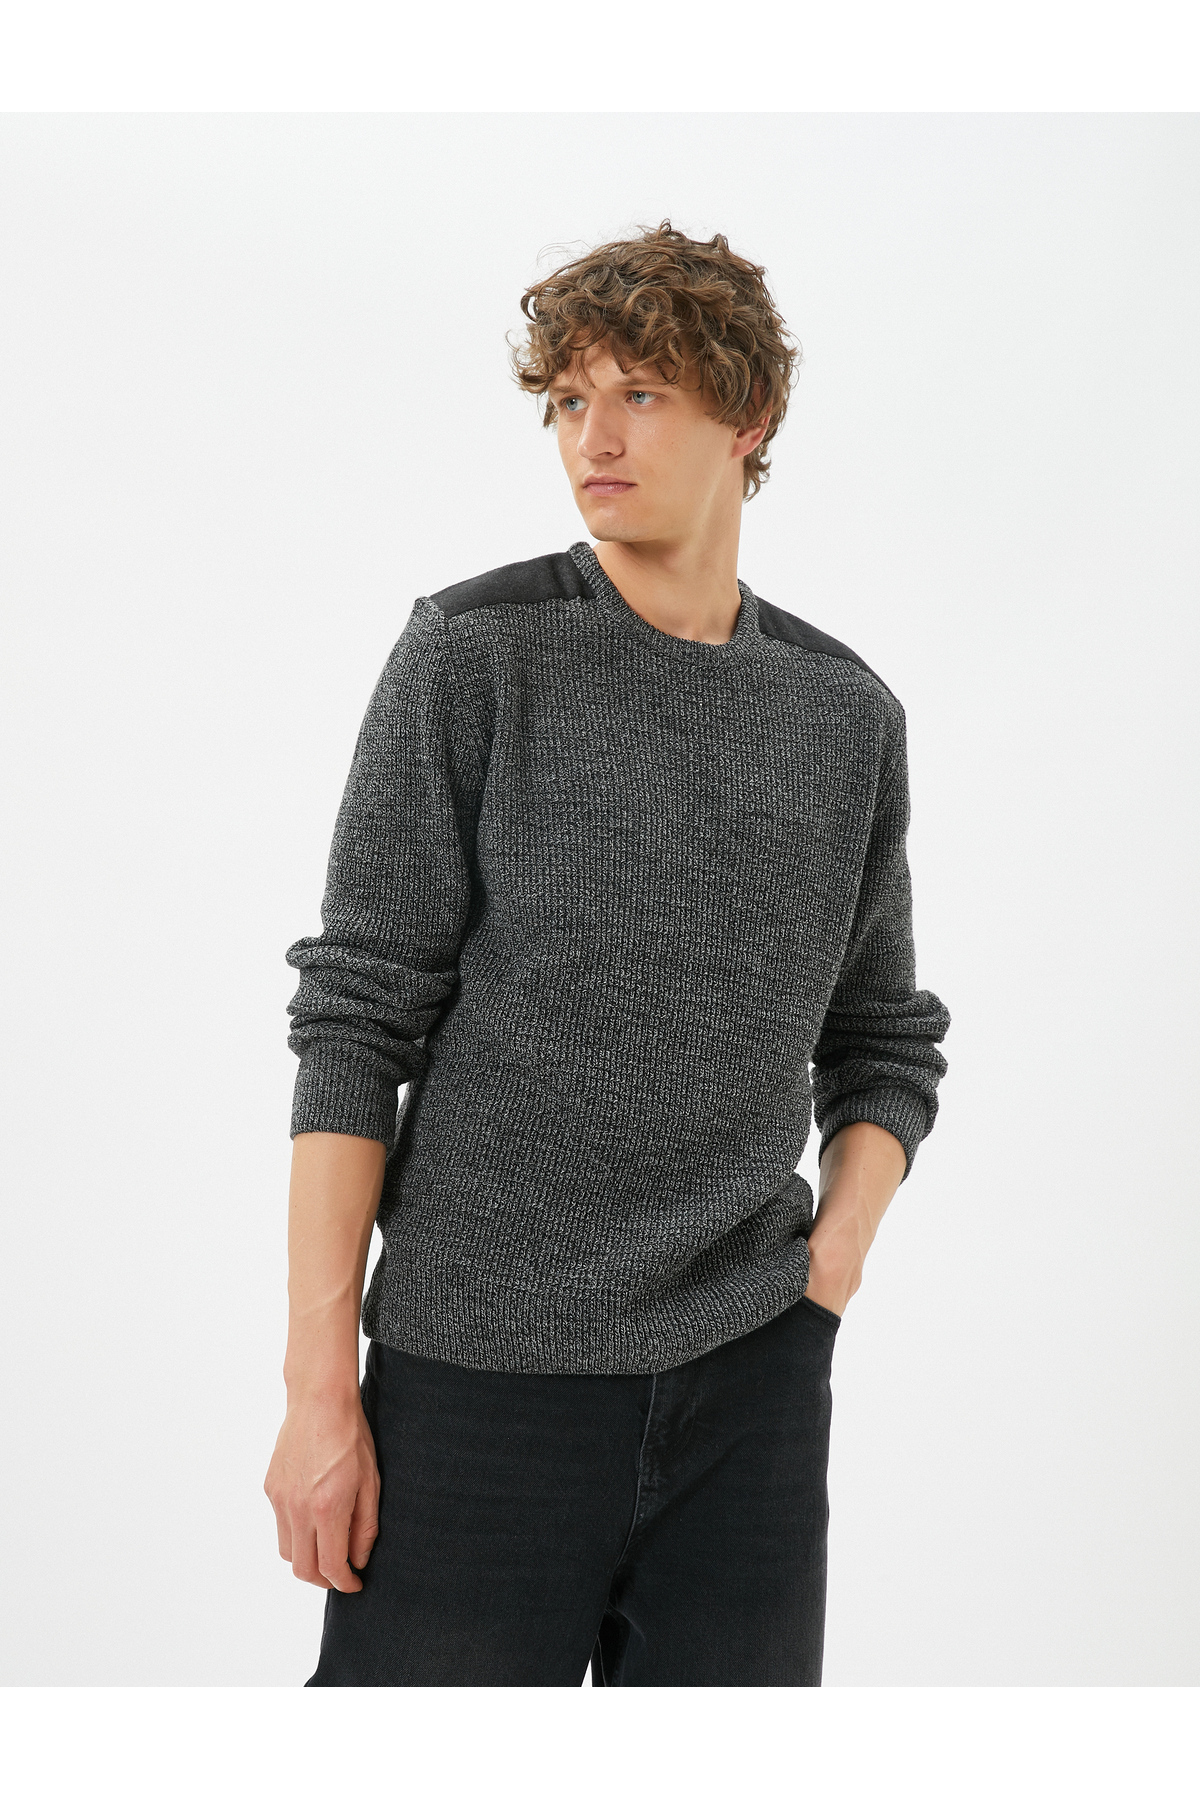 Levně Koton Marbled Sweater Slim Fit Textured Crew Neck Shoulder Detail.